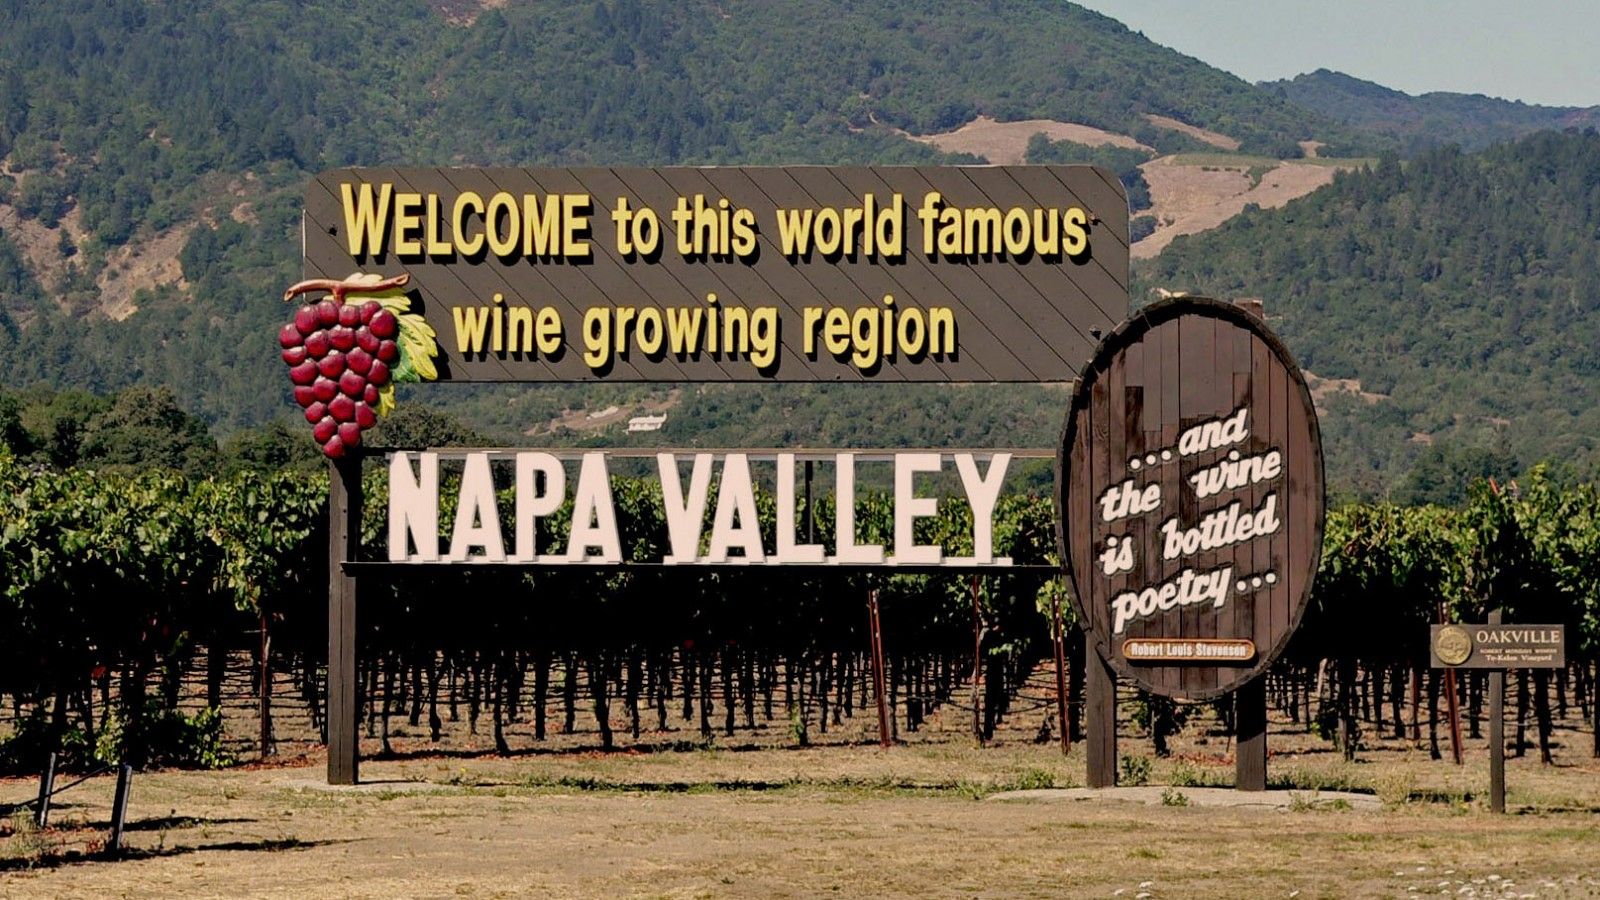 Napa Valley AVA Winery & Vineyards